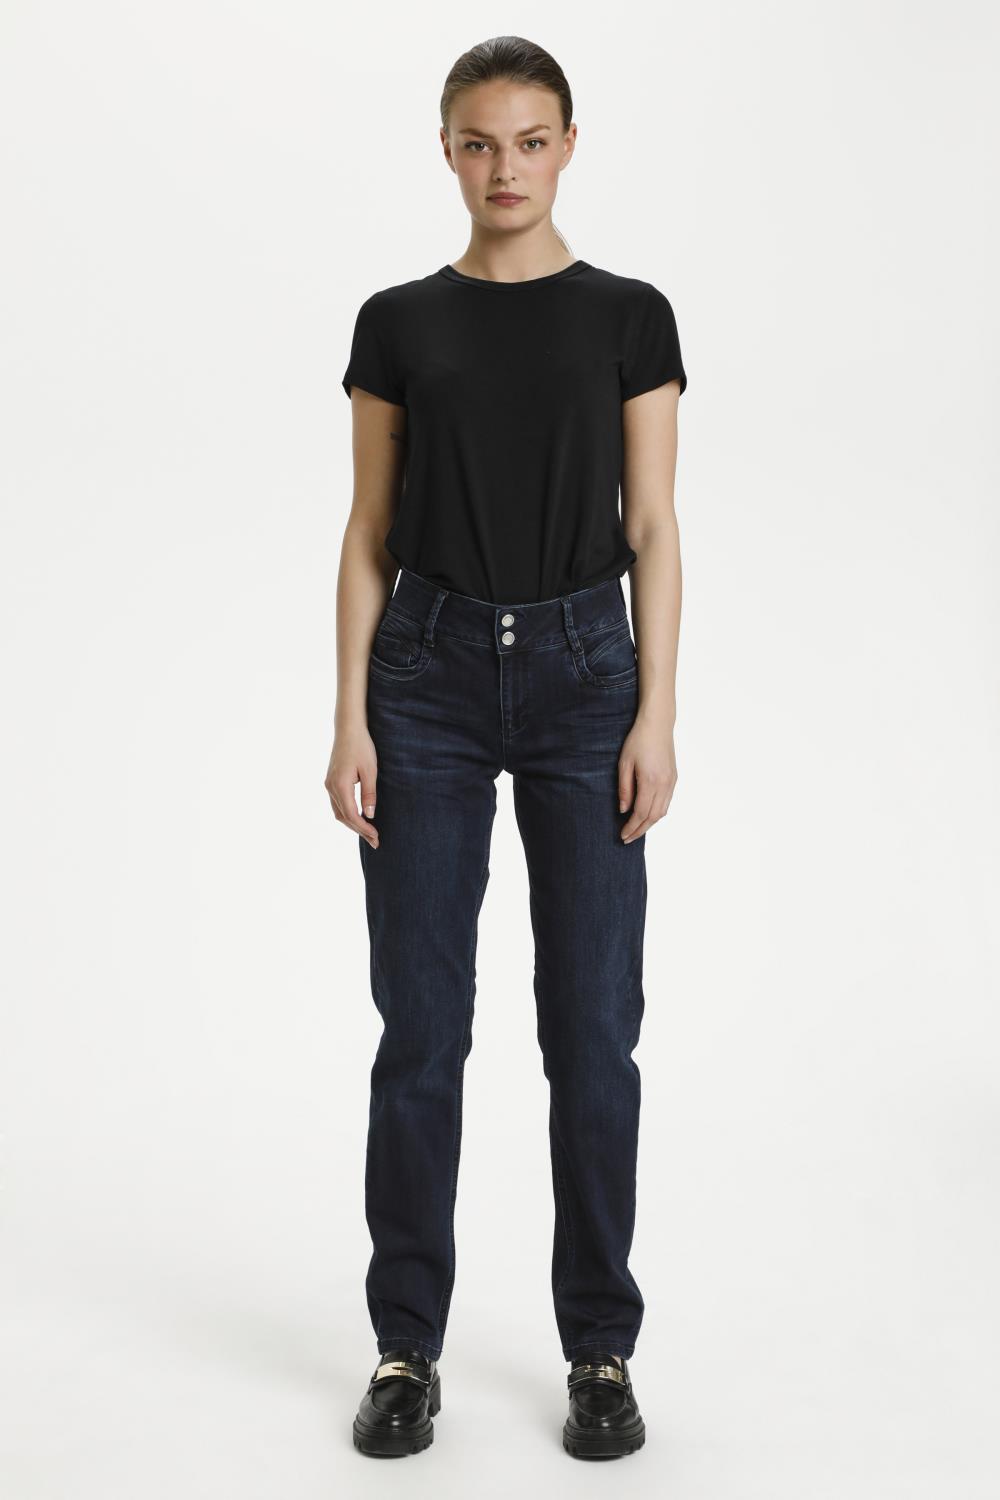 My Essential Wardrobe, Regitze stright jeans